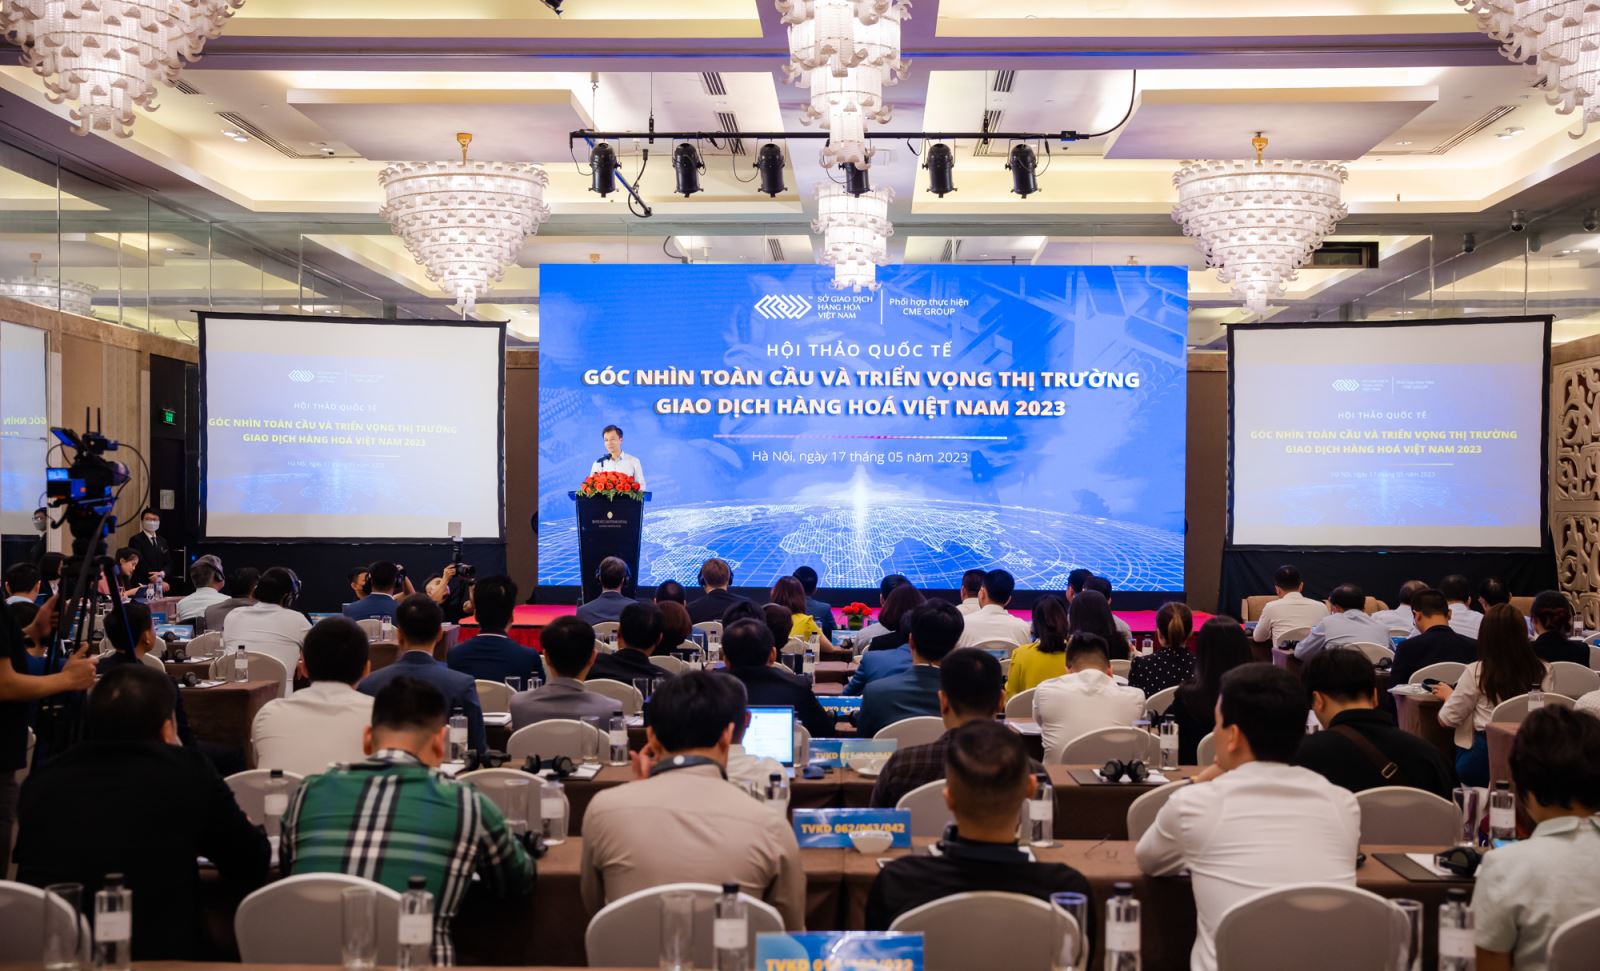 các chuyên gia của CME Group liên tục khẳng định vai trò của Việt Nam đối với thị trường gia dịch hàng hóa thế giới.